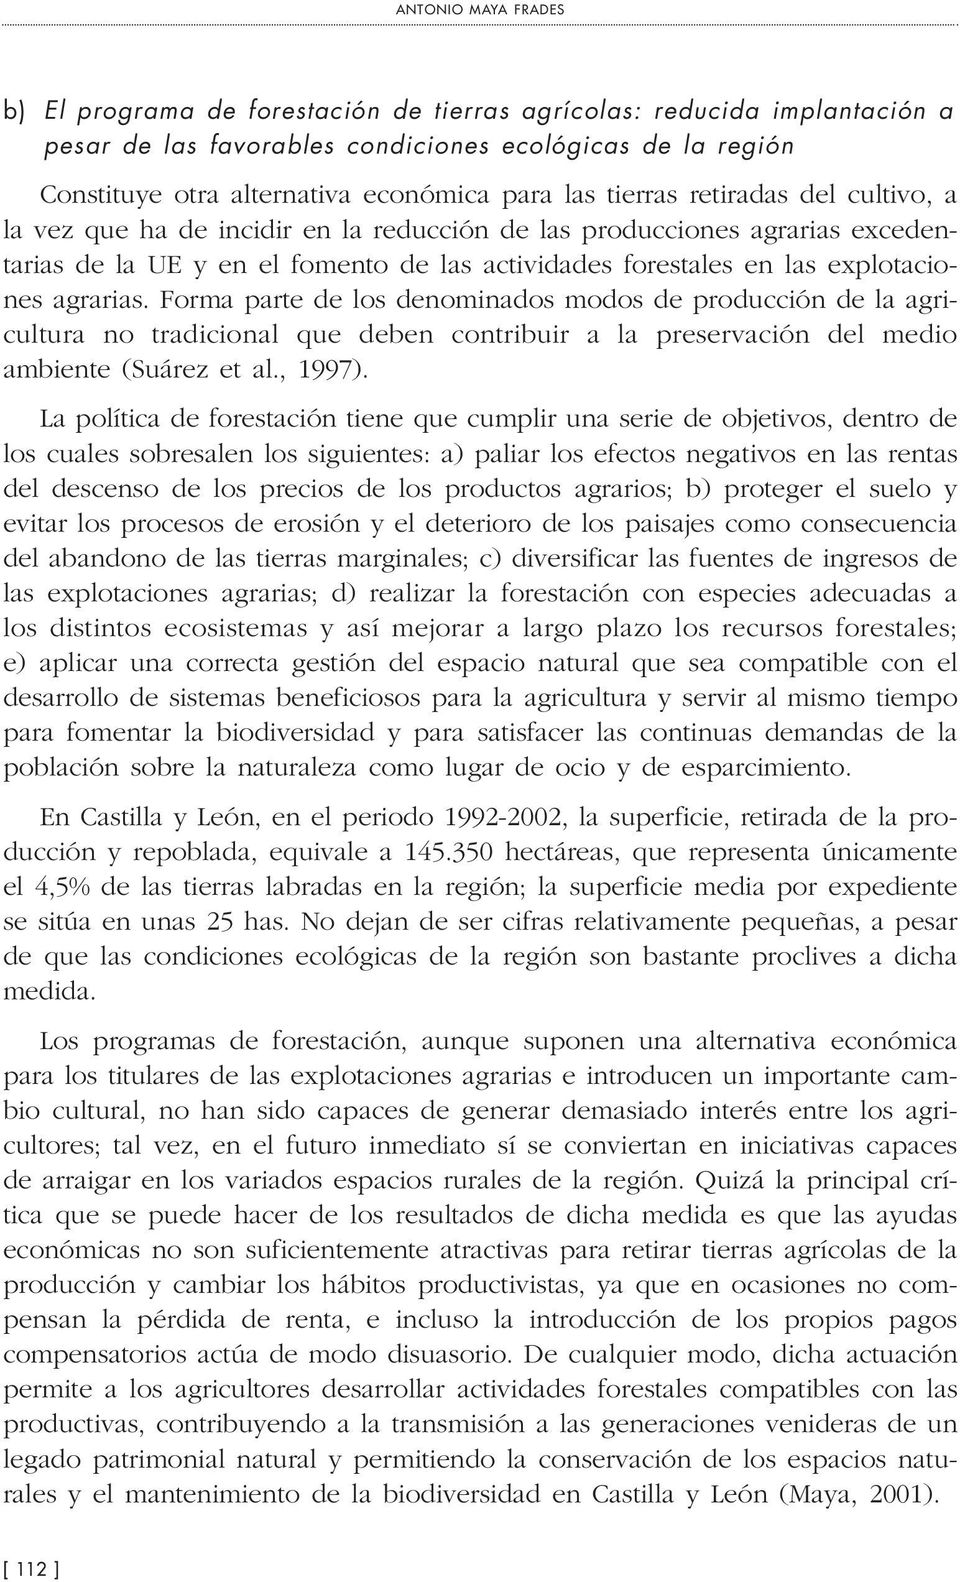 agrarias. Forma parte de los denominados modos de producción de la agricultura no tradicional que deben contribuir a la preservación del medio ambiente (Suárez et al., 1997).